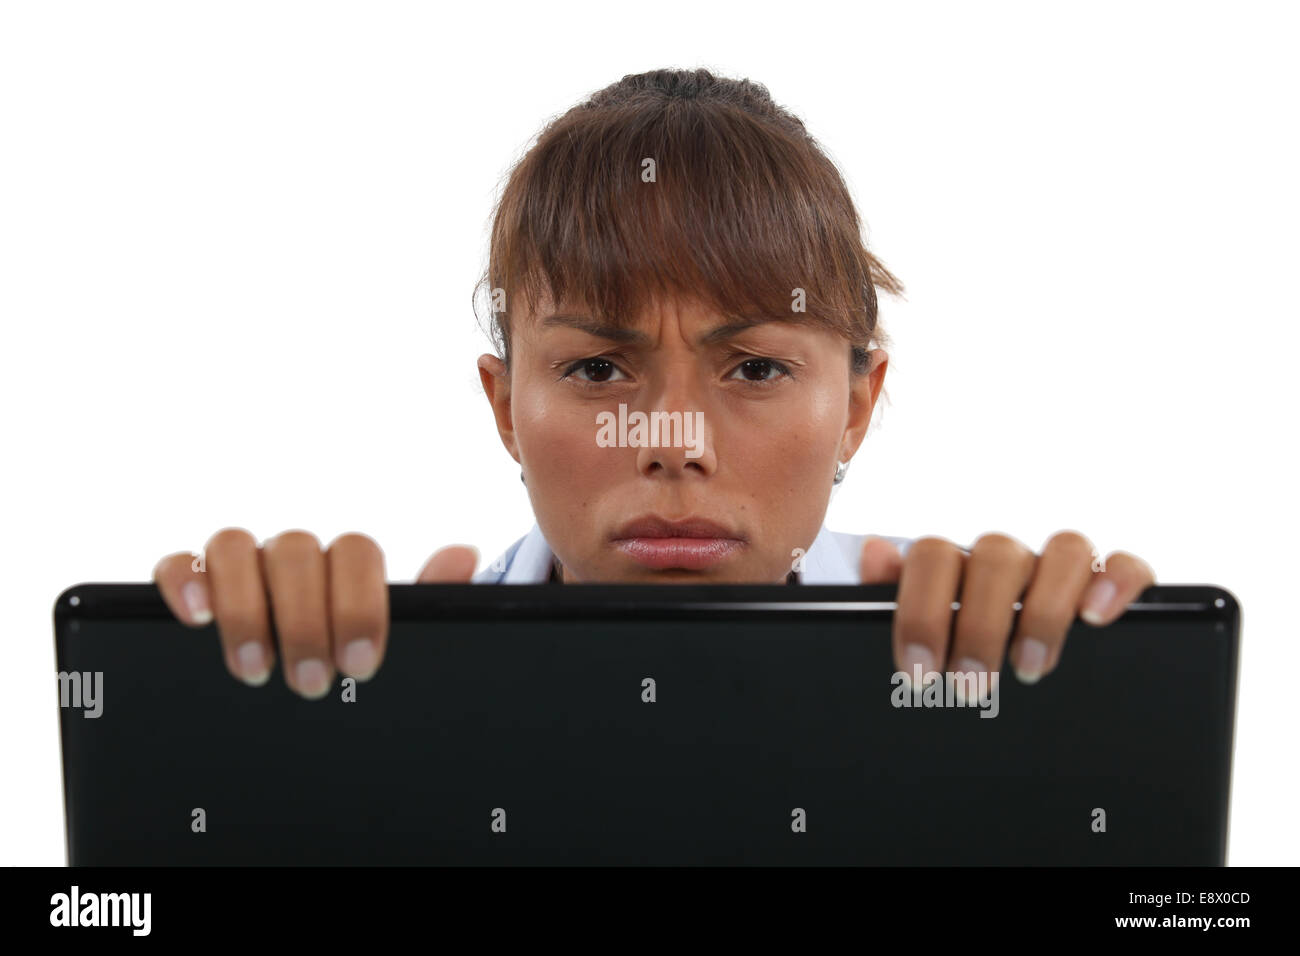 Businesswoman peering over laptop Stock Photo